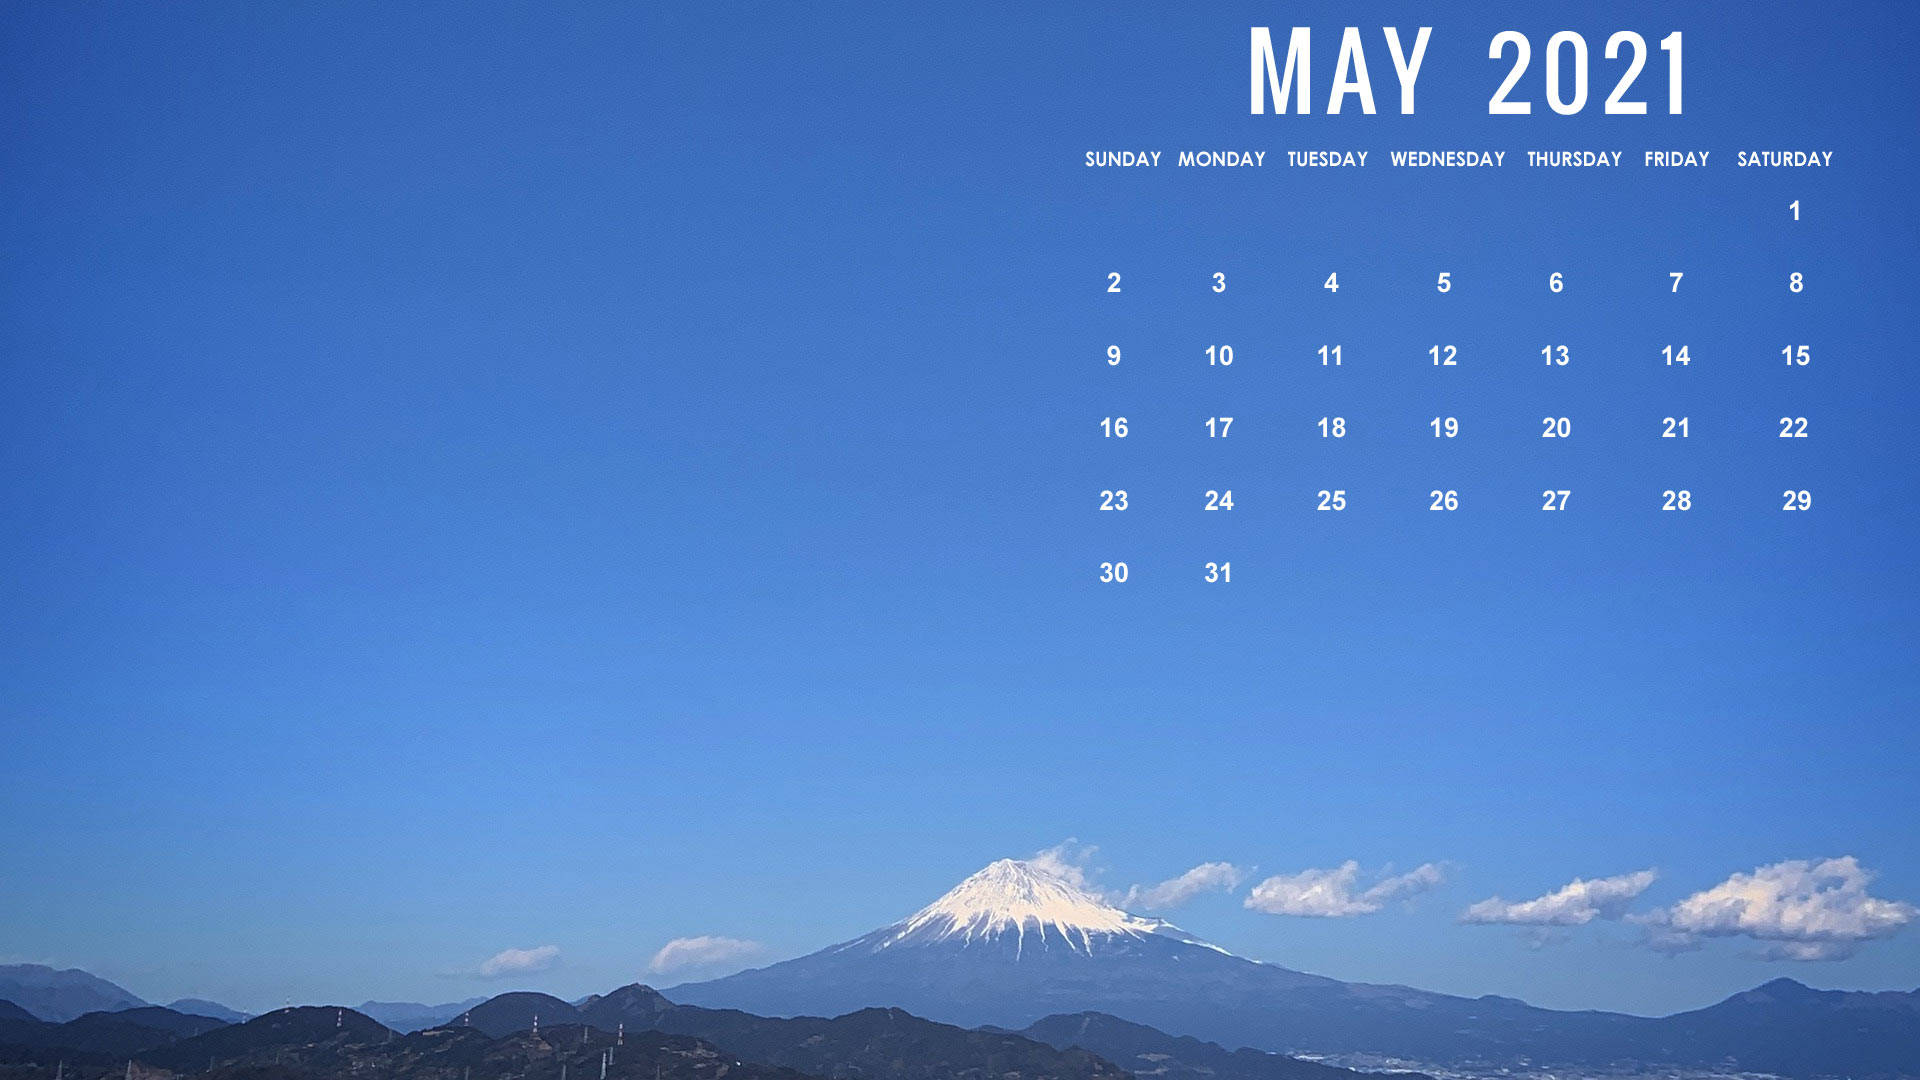 May Mt. Fuji Calendar 2021